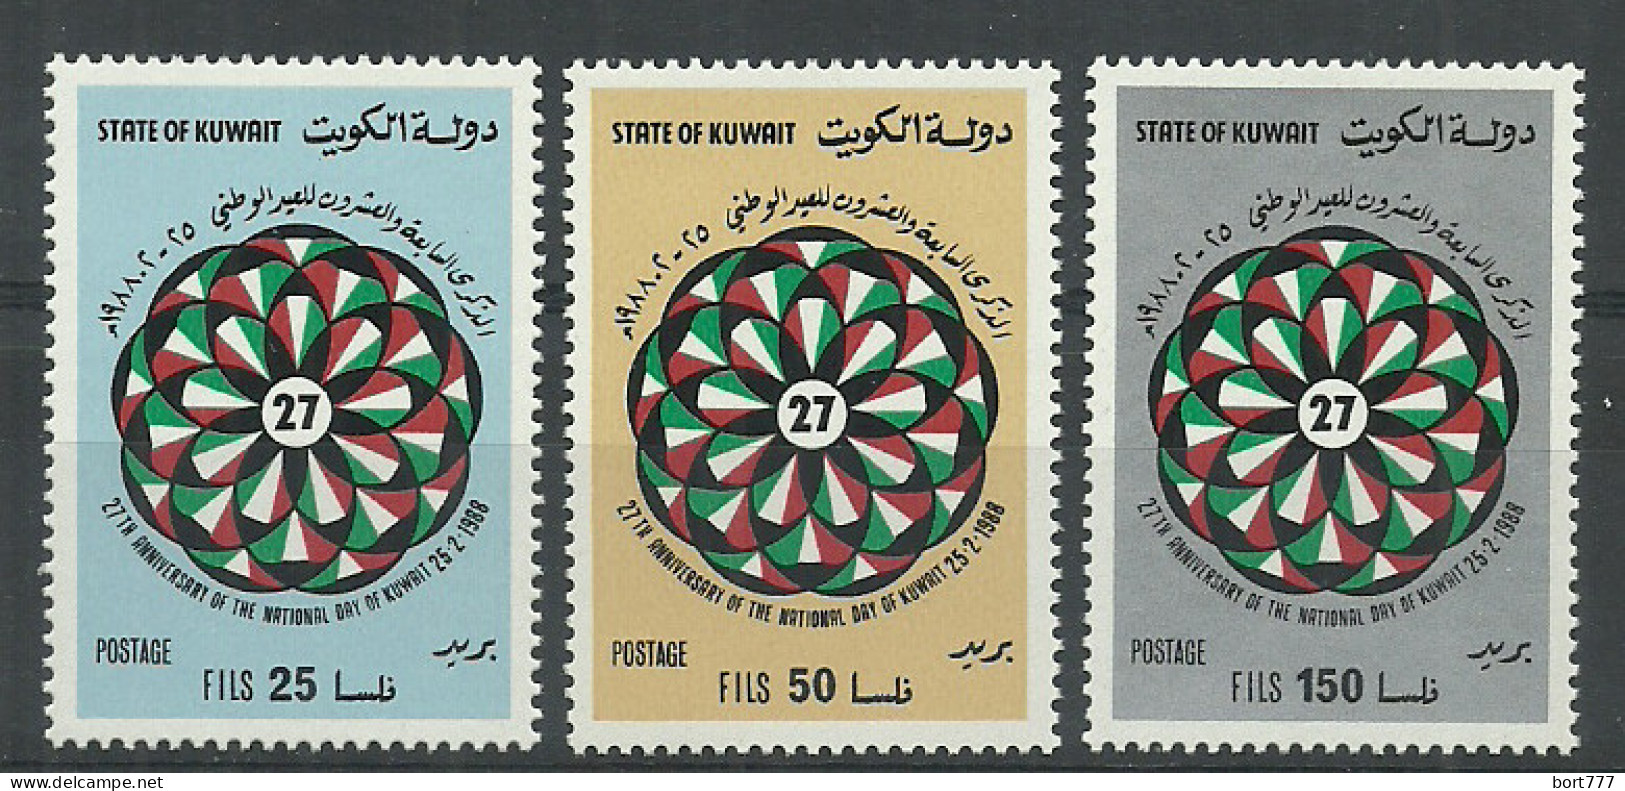 Kuwait 1988 Year, Mint Stamps MNH (** )  Mi # 1153-55 - Kuwait